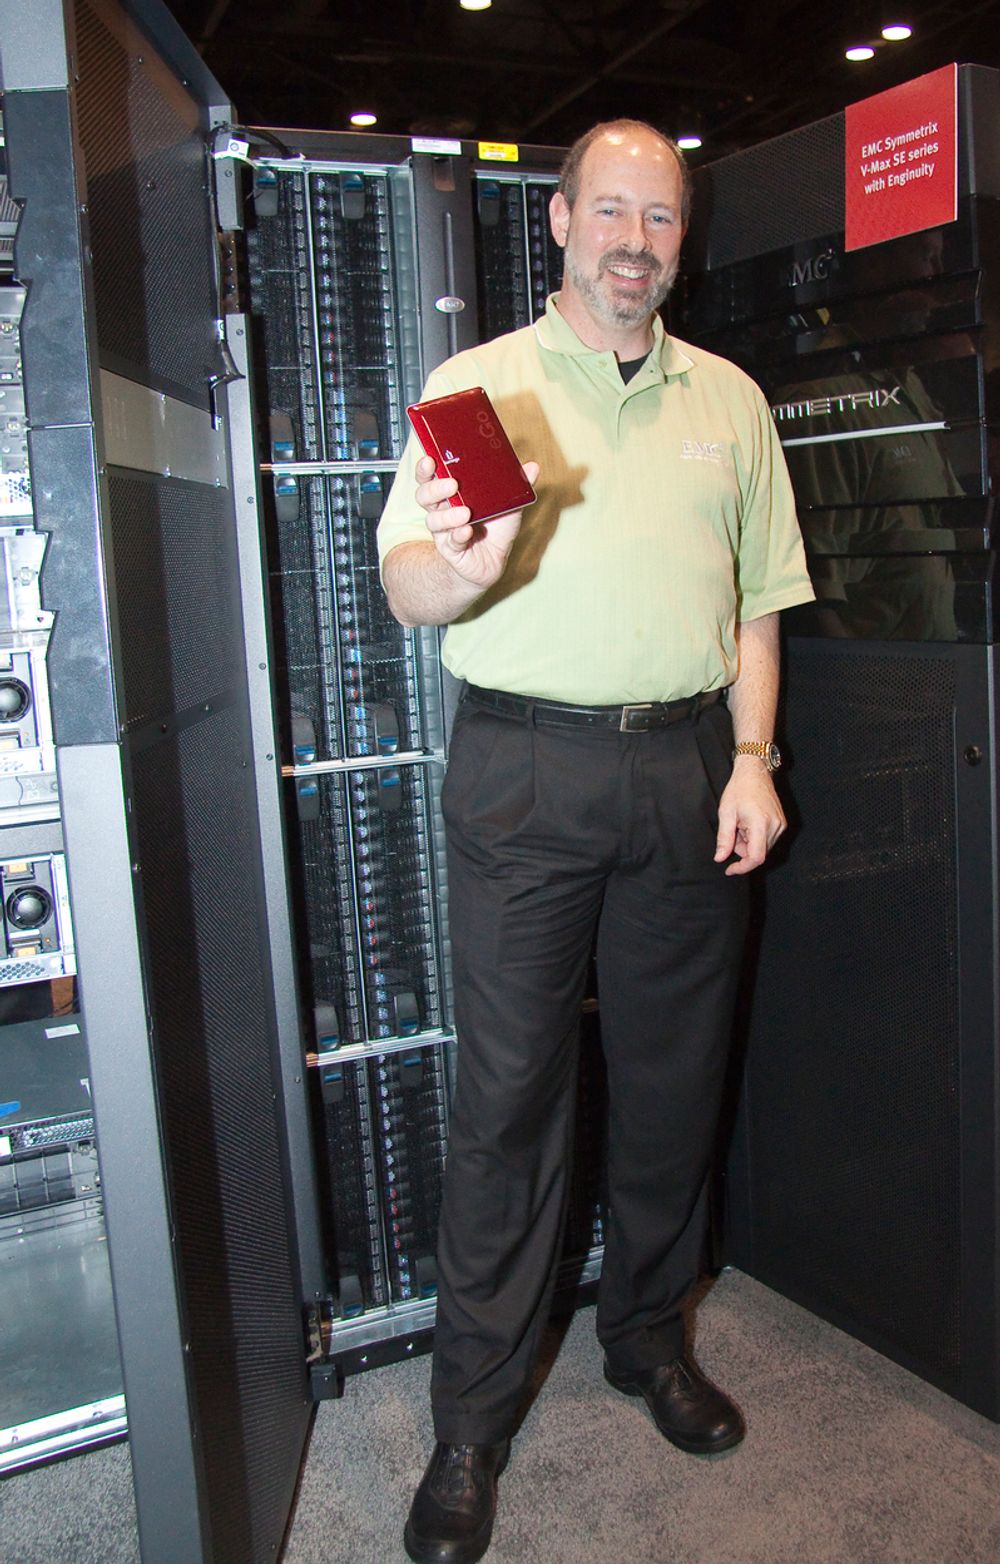 STOR OG LITEN:Teknologidirektør Ken Steinhardt i datalagringselskapet EMC foran selskapets store Symetrics lagringsskap med selskapets minste Iomega lommelager i hånden.